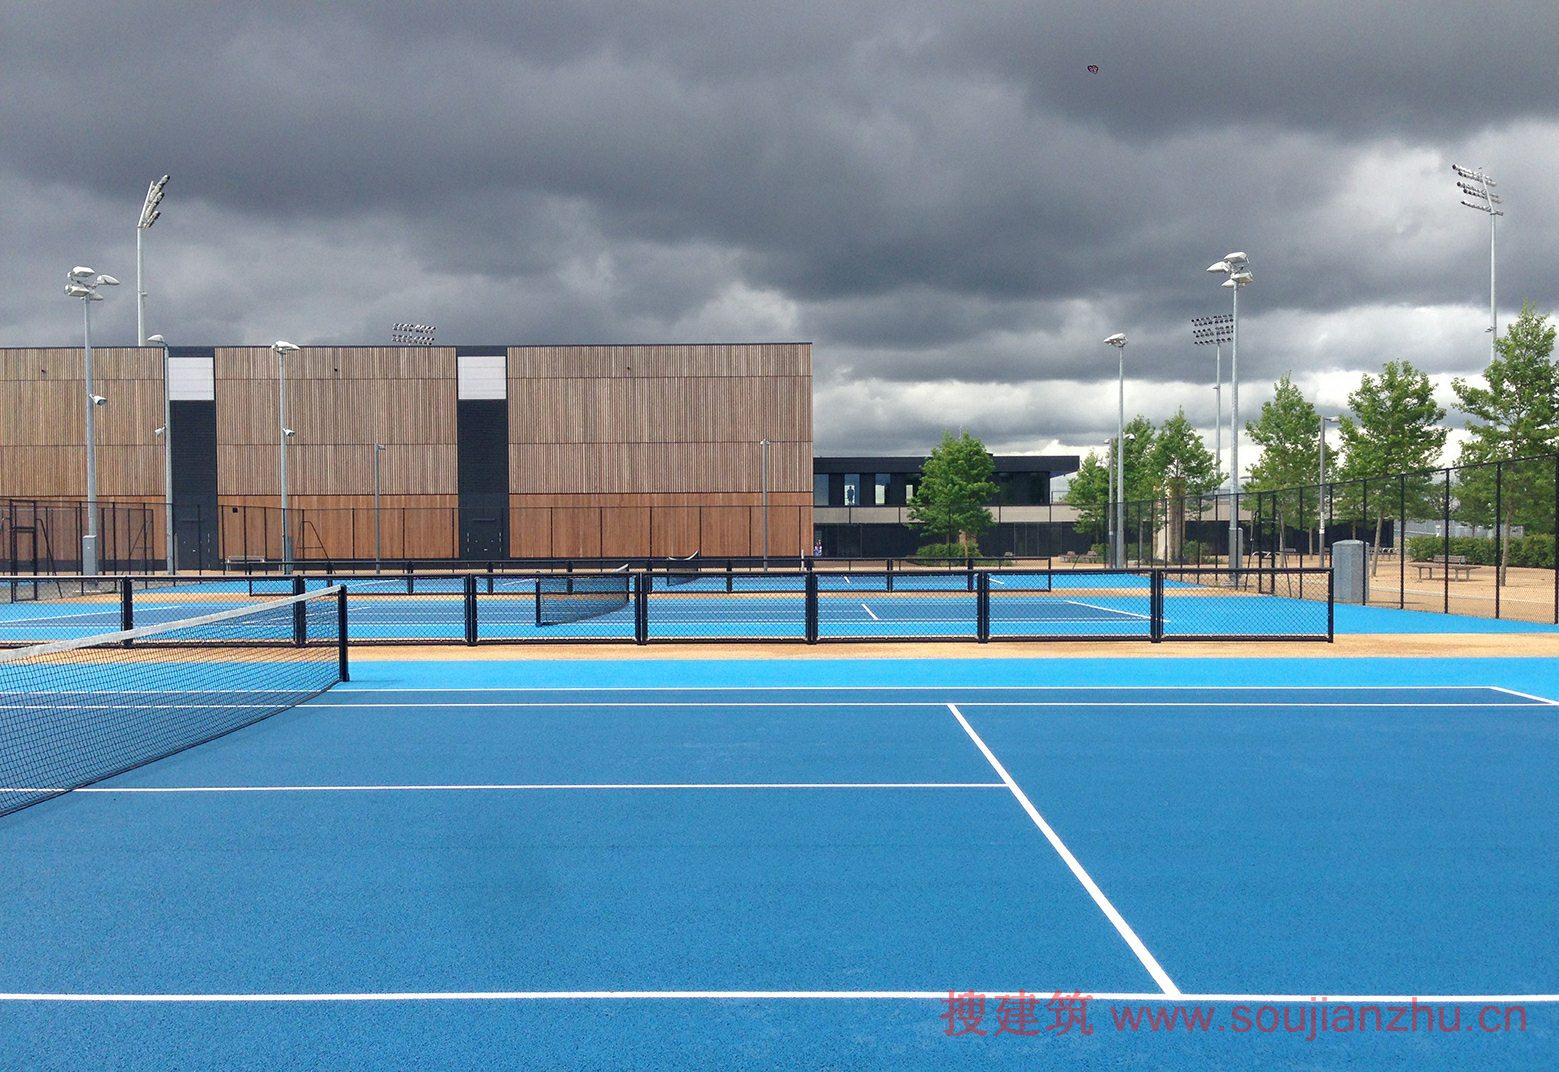 建筑师：Stanton Williams 地点：英国 伦敦 建筑面积：5602平方米 场地面积：146590平方米 该项目是由Stanton Williams设计的，Lee Valley曲棍球和网球中心是伦敦2012年一个鼓舞人心的遗产地点。作为女王伊丽莎白奥林匹克公园北部的门户，它标志着伊顿庄园的场地改造的最后阶段，它曾经作为伦敦2012年奥运会和残奥会的水上训练和残奥会轮椅网球场地唯一历史上残奥会的专用场地成为世界一流的体育设施建设。 在这最后的模式，它将成为英格兰曲棍球的主要活动的场地，